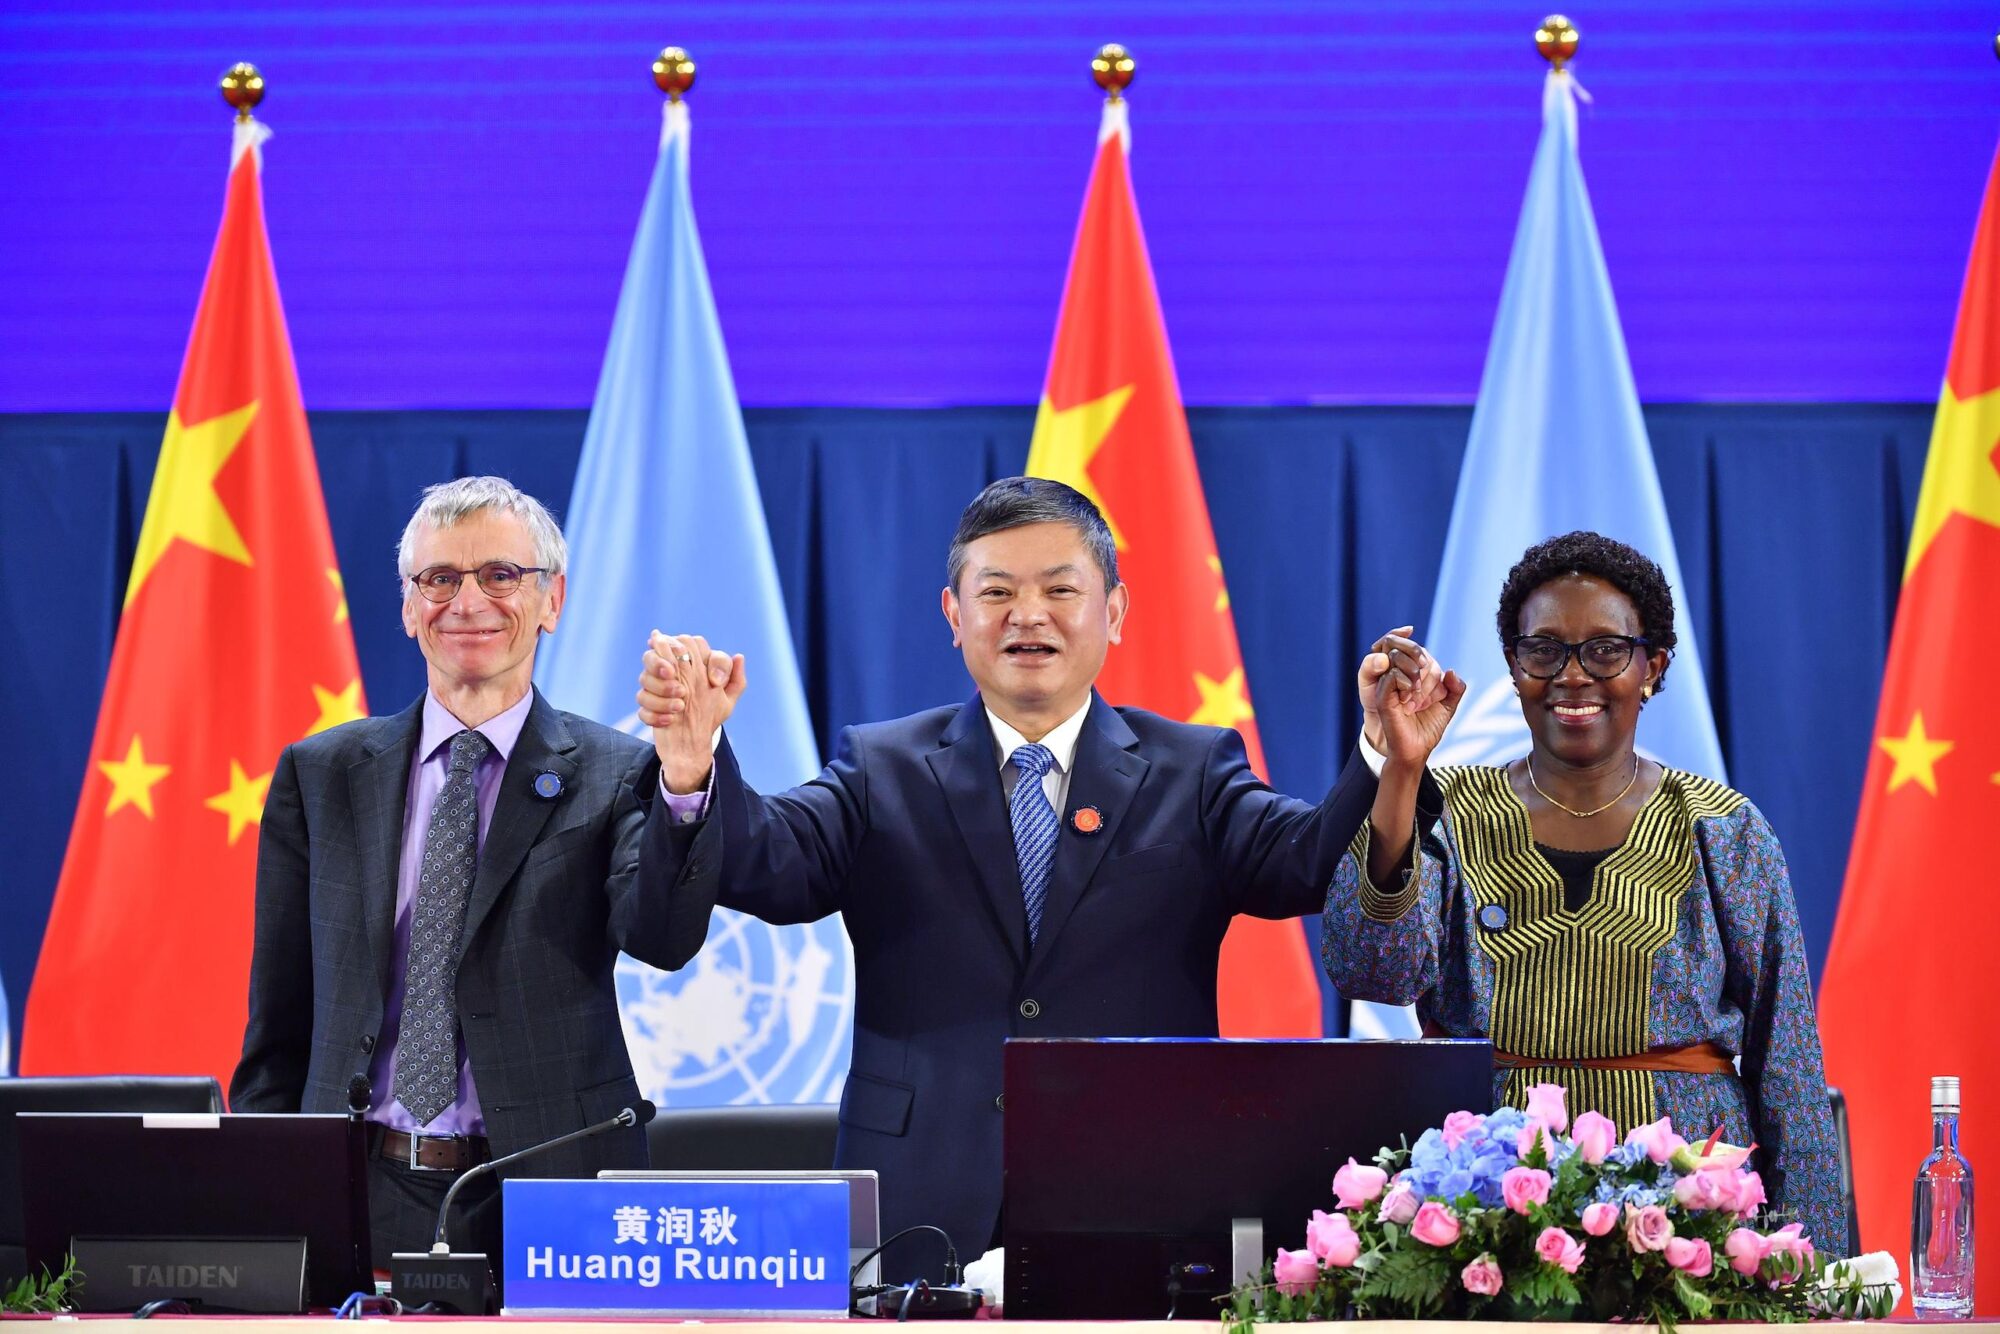 dos hombres y una mujer de la mano, parados delante de banderas de la ONU y China